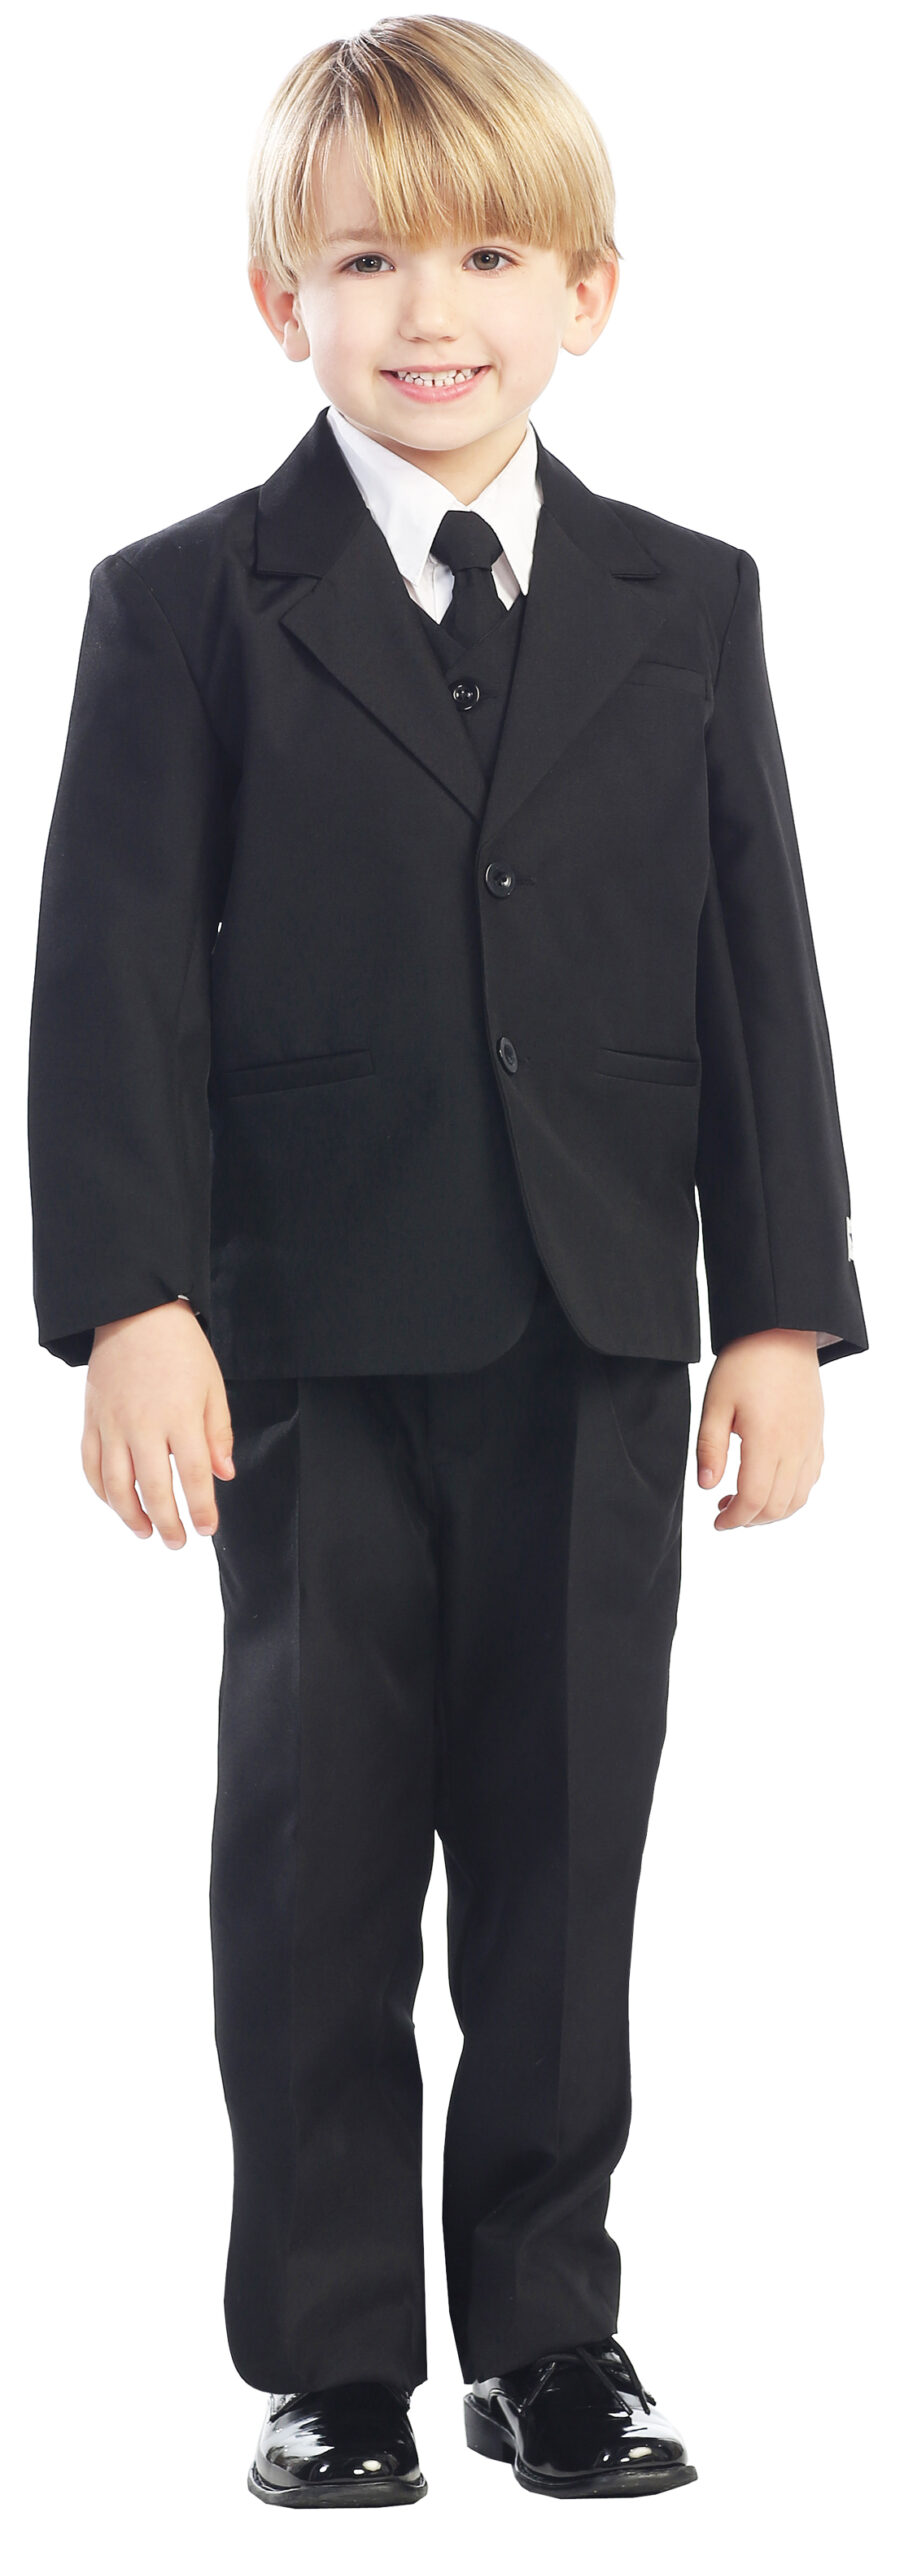 Avery Hill 5-Piece Boy's 2-Button Dress Suit Full-Back Vest - Black Size 14